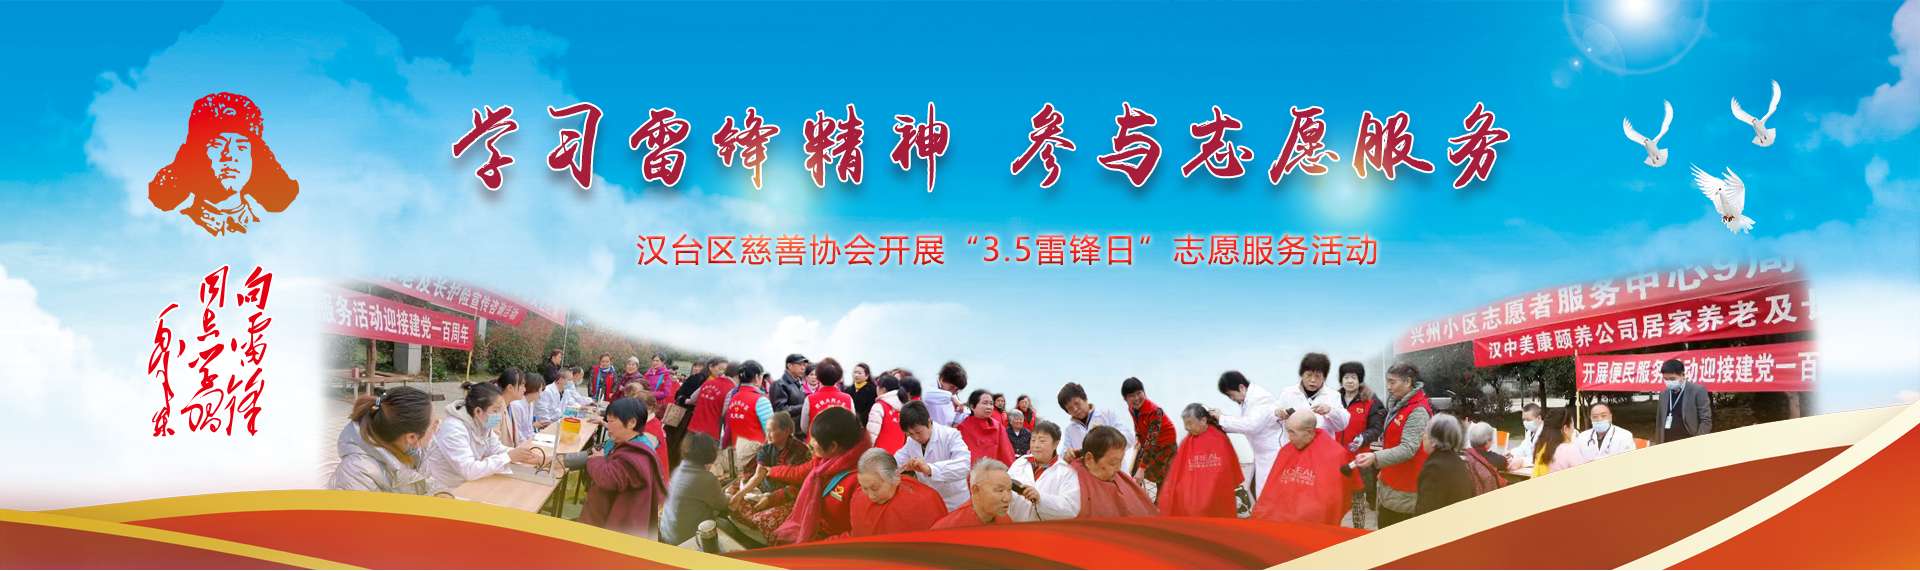 汉台区慈善协会开展“3.5雷锋日”志愿服务活动